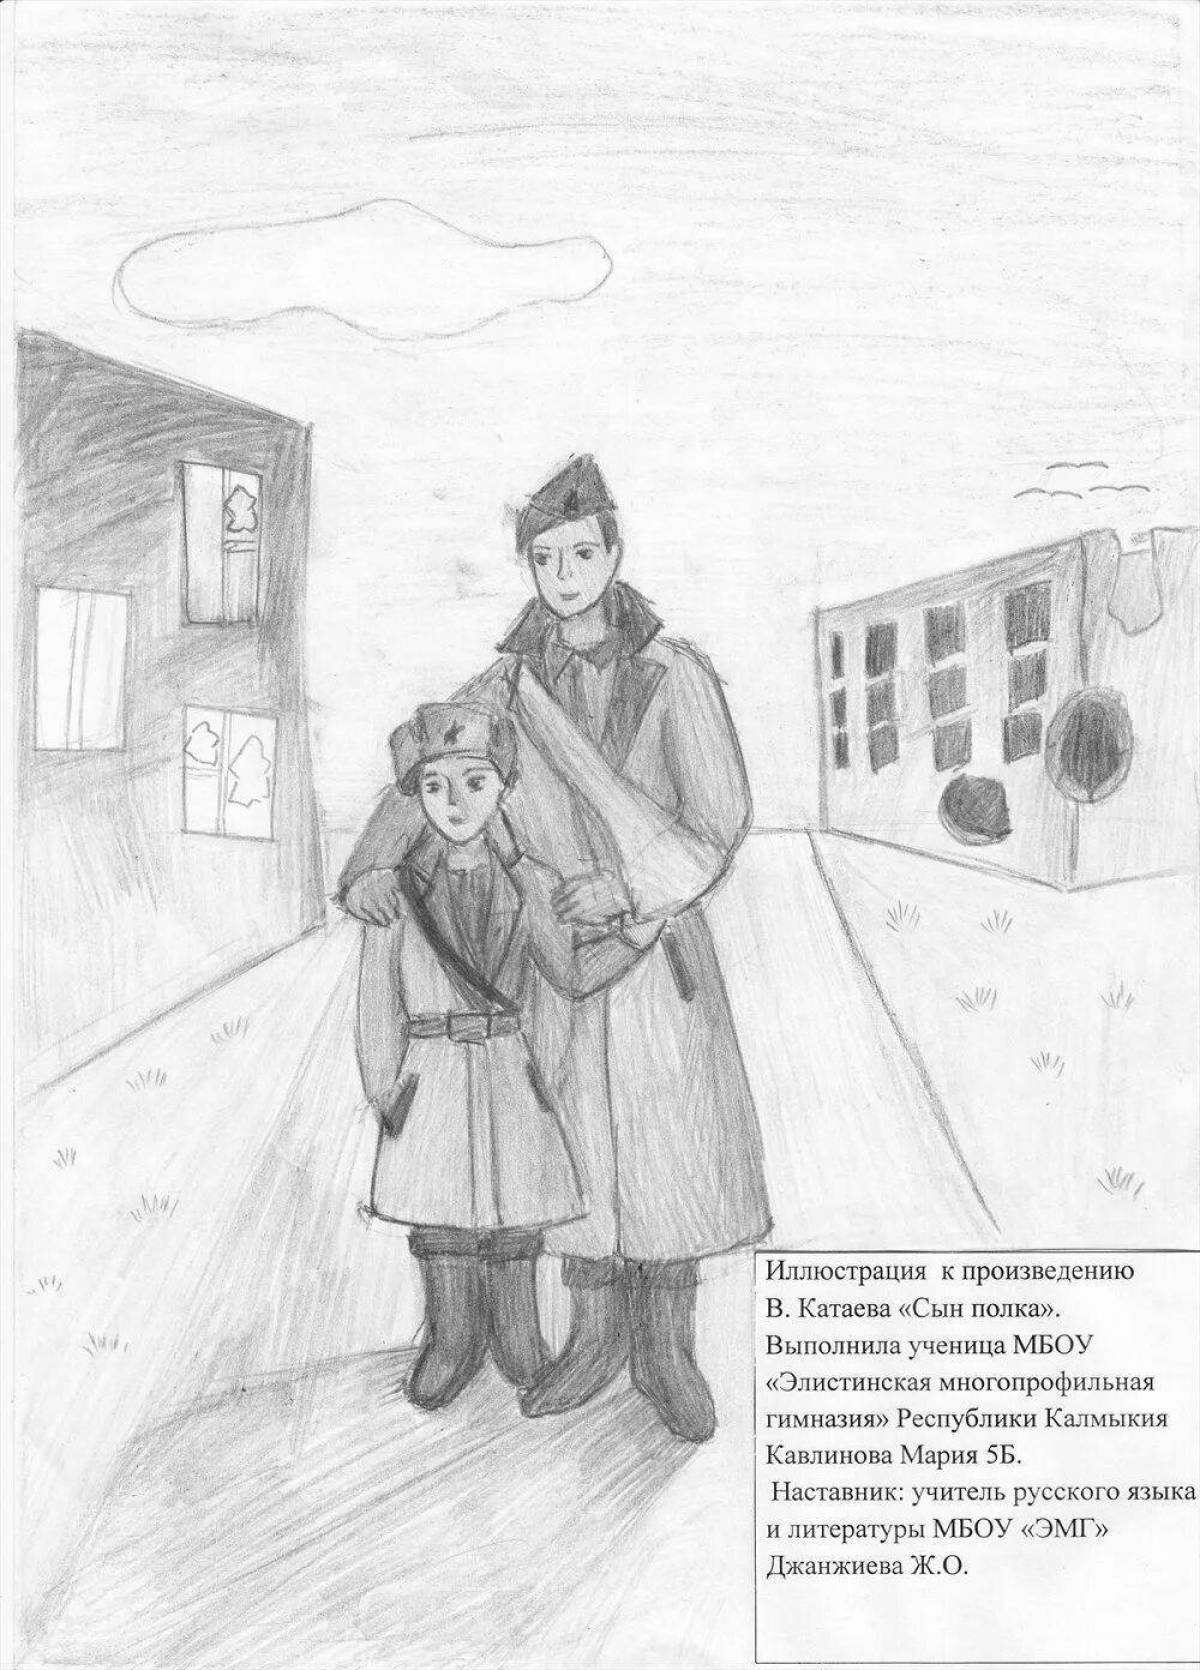 Иллюстрация к произведению Катаева сын полка